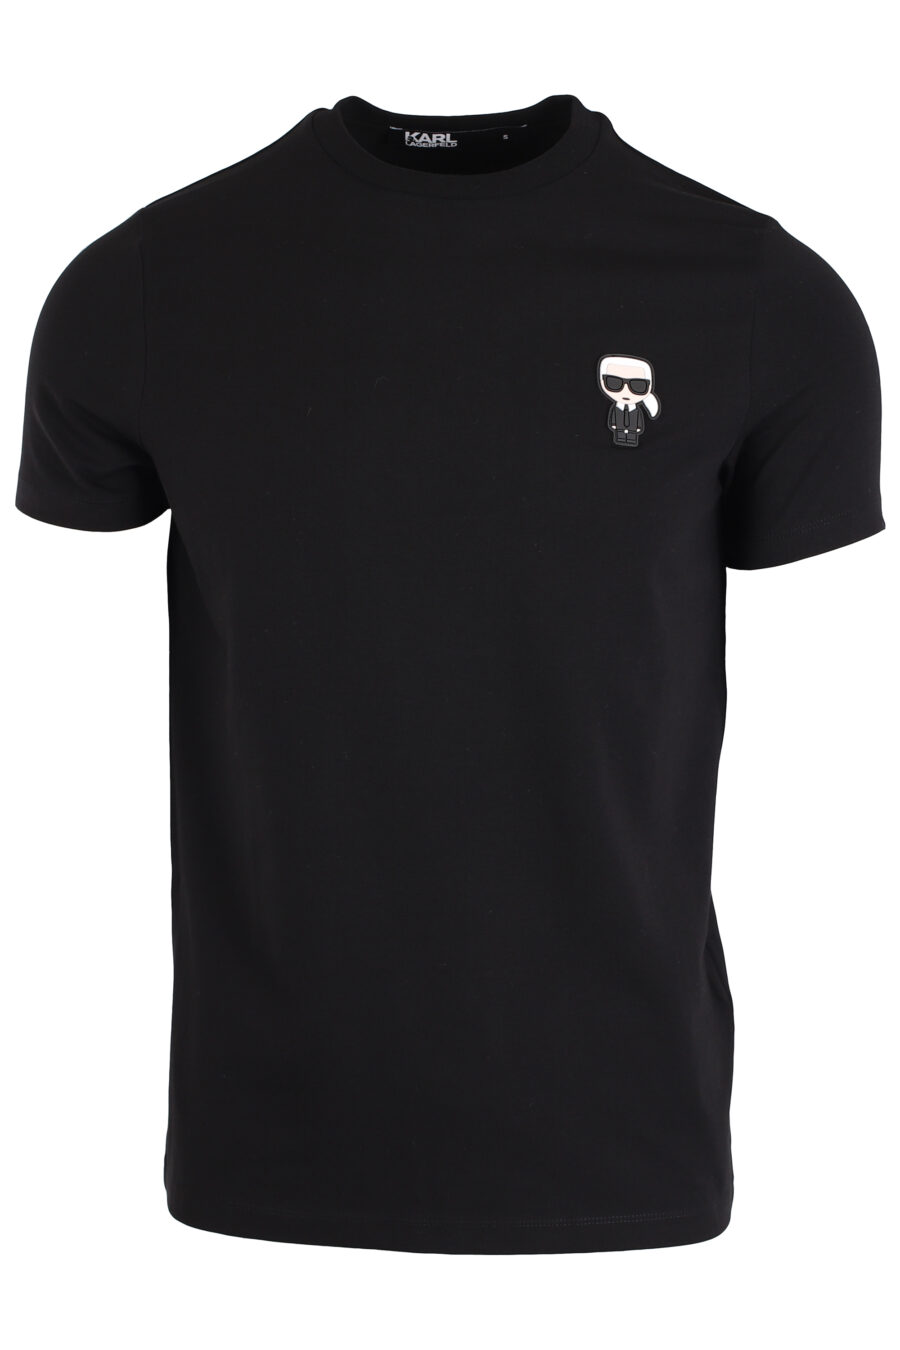 T-shirt schwarz mit Logo "ikonik" - IMG 3976